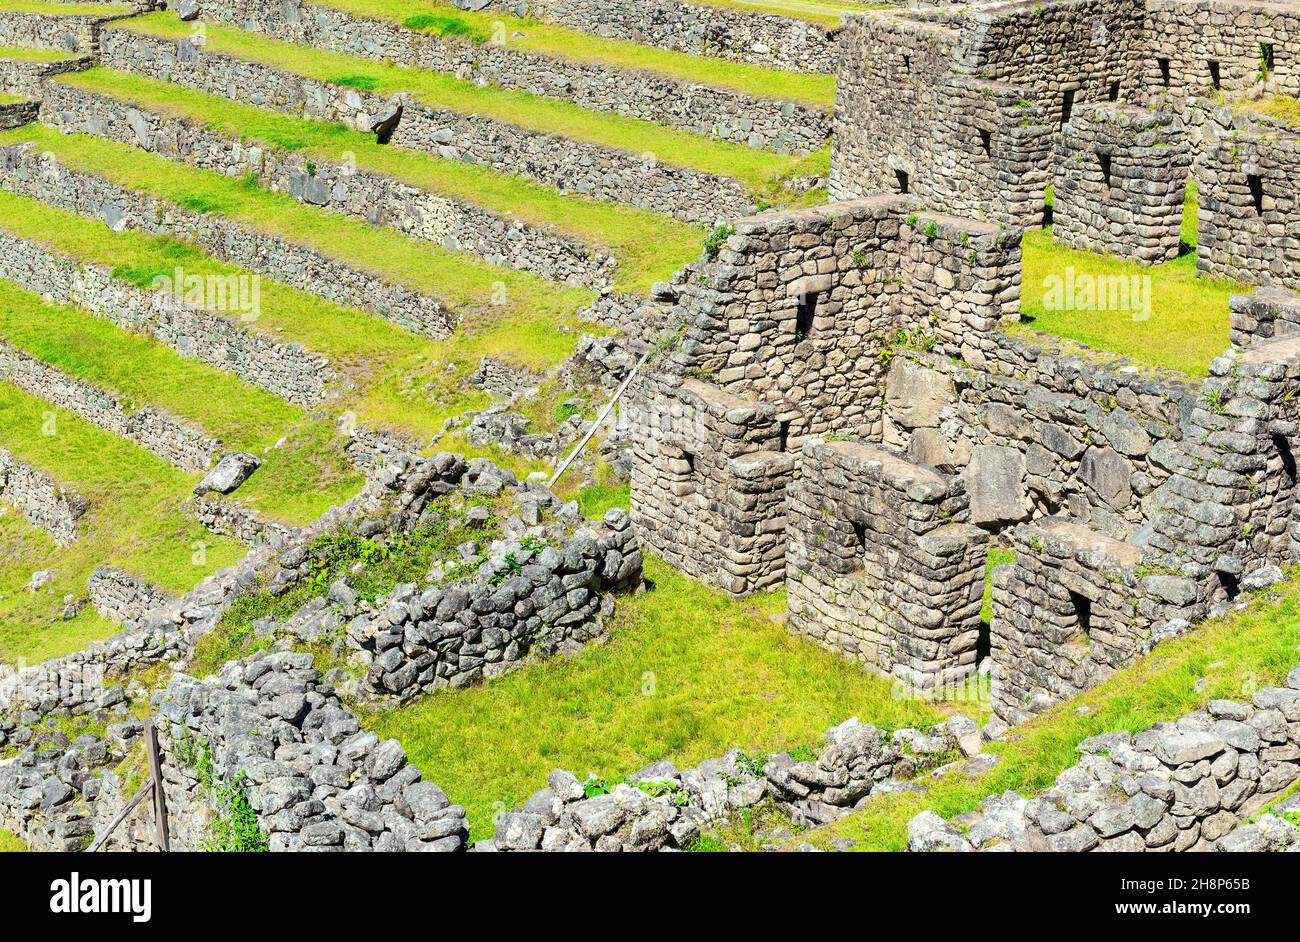 Nahaufnahme der Machu Picchu-Architektur mit inka-Mauern, Häusern und landwirtschaftlichen Terrassen, Cusco, Peru. Stockfoto